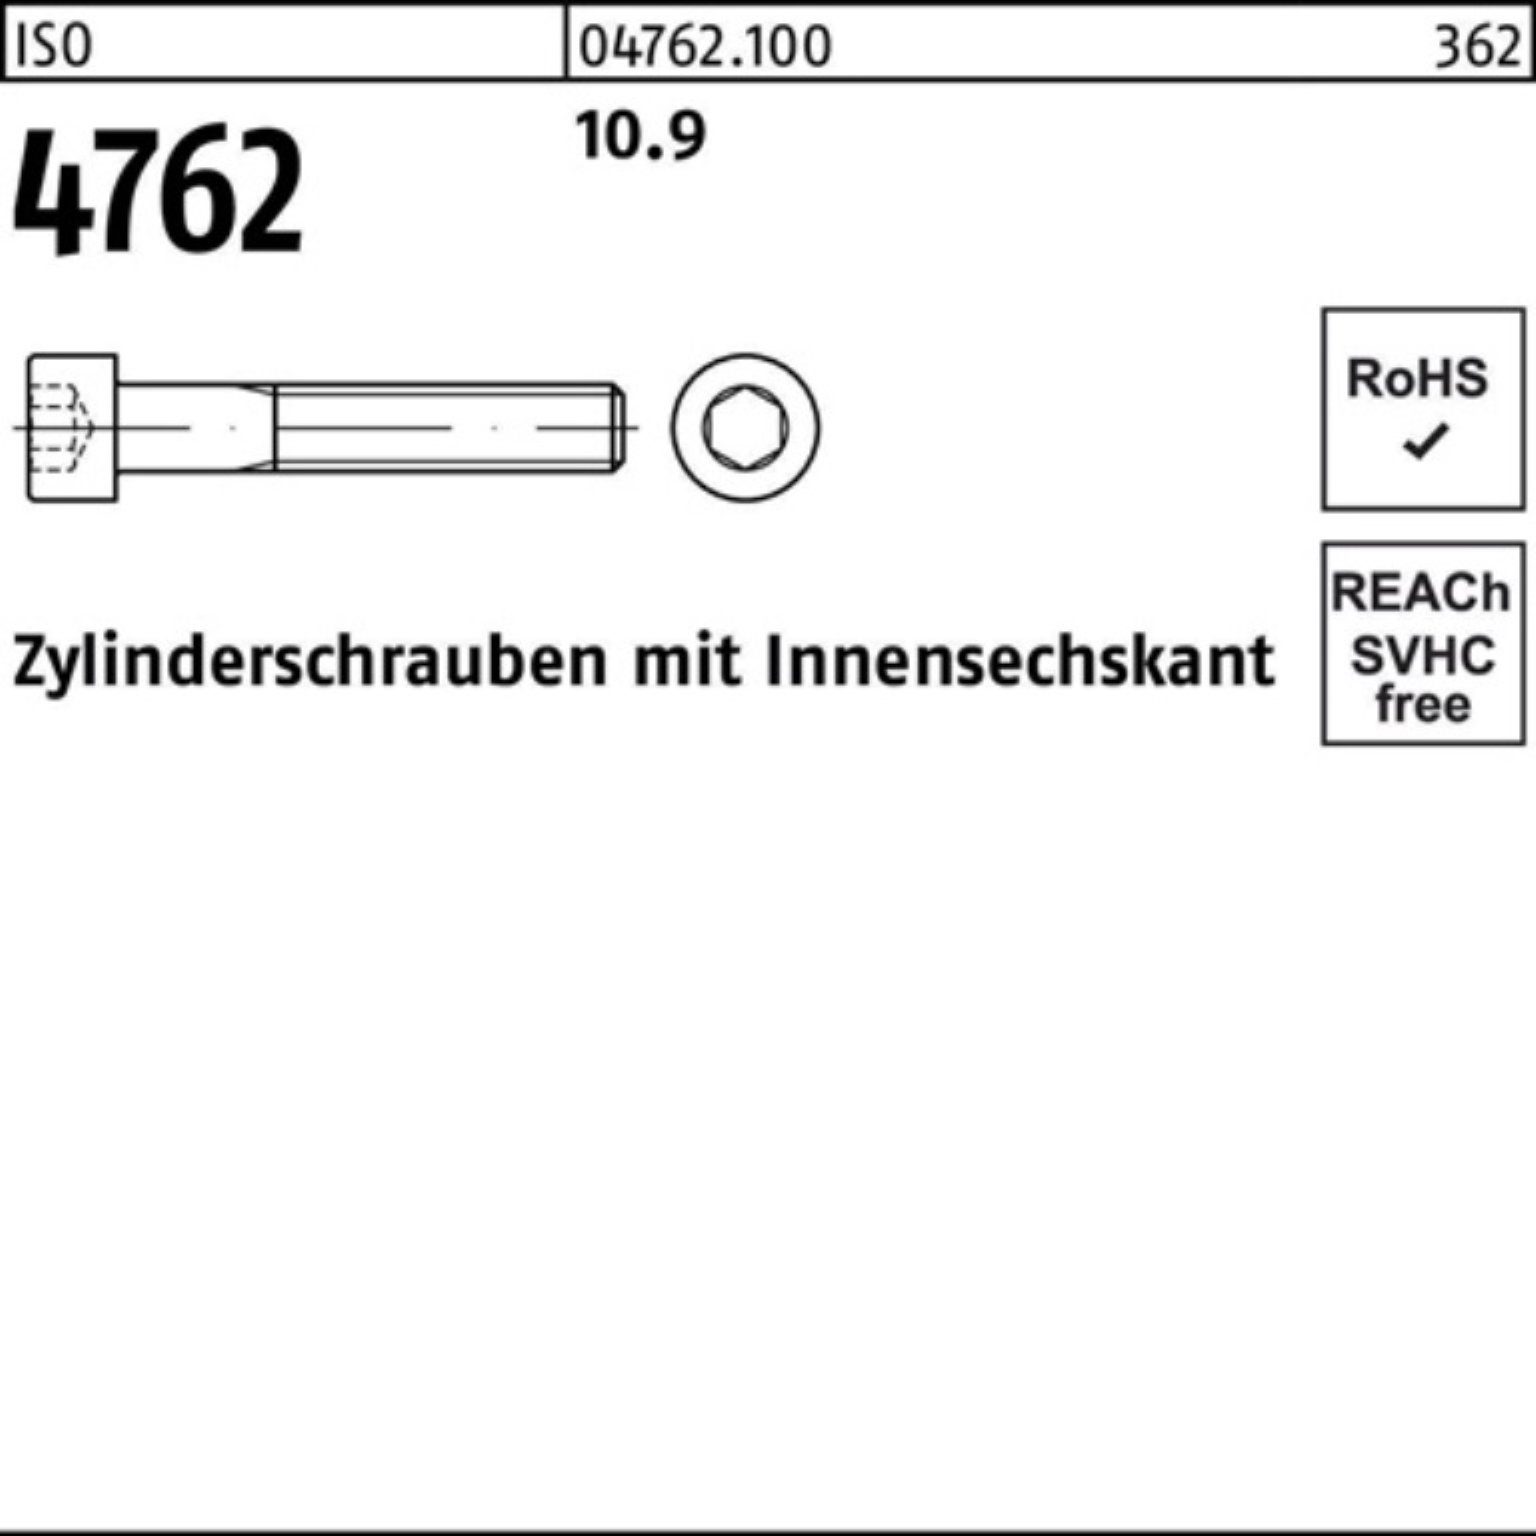 Reyher Innen-6kt 200er ISO 200 20 10.9 Zylinderschraube M8x Pack Zylinderschraube Stück 4762